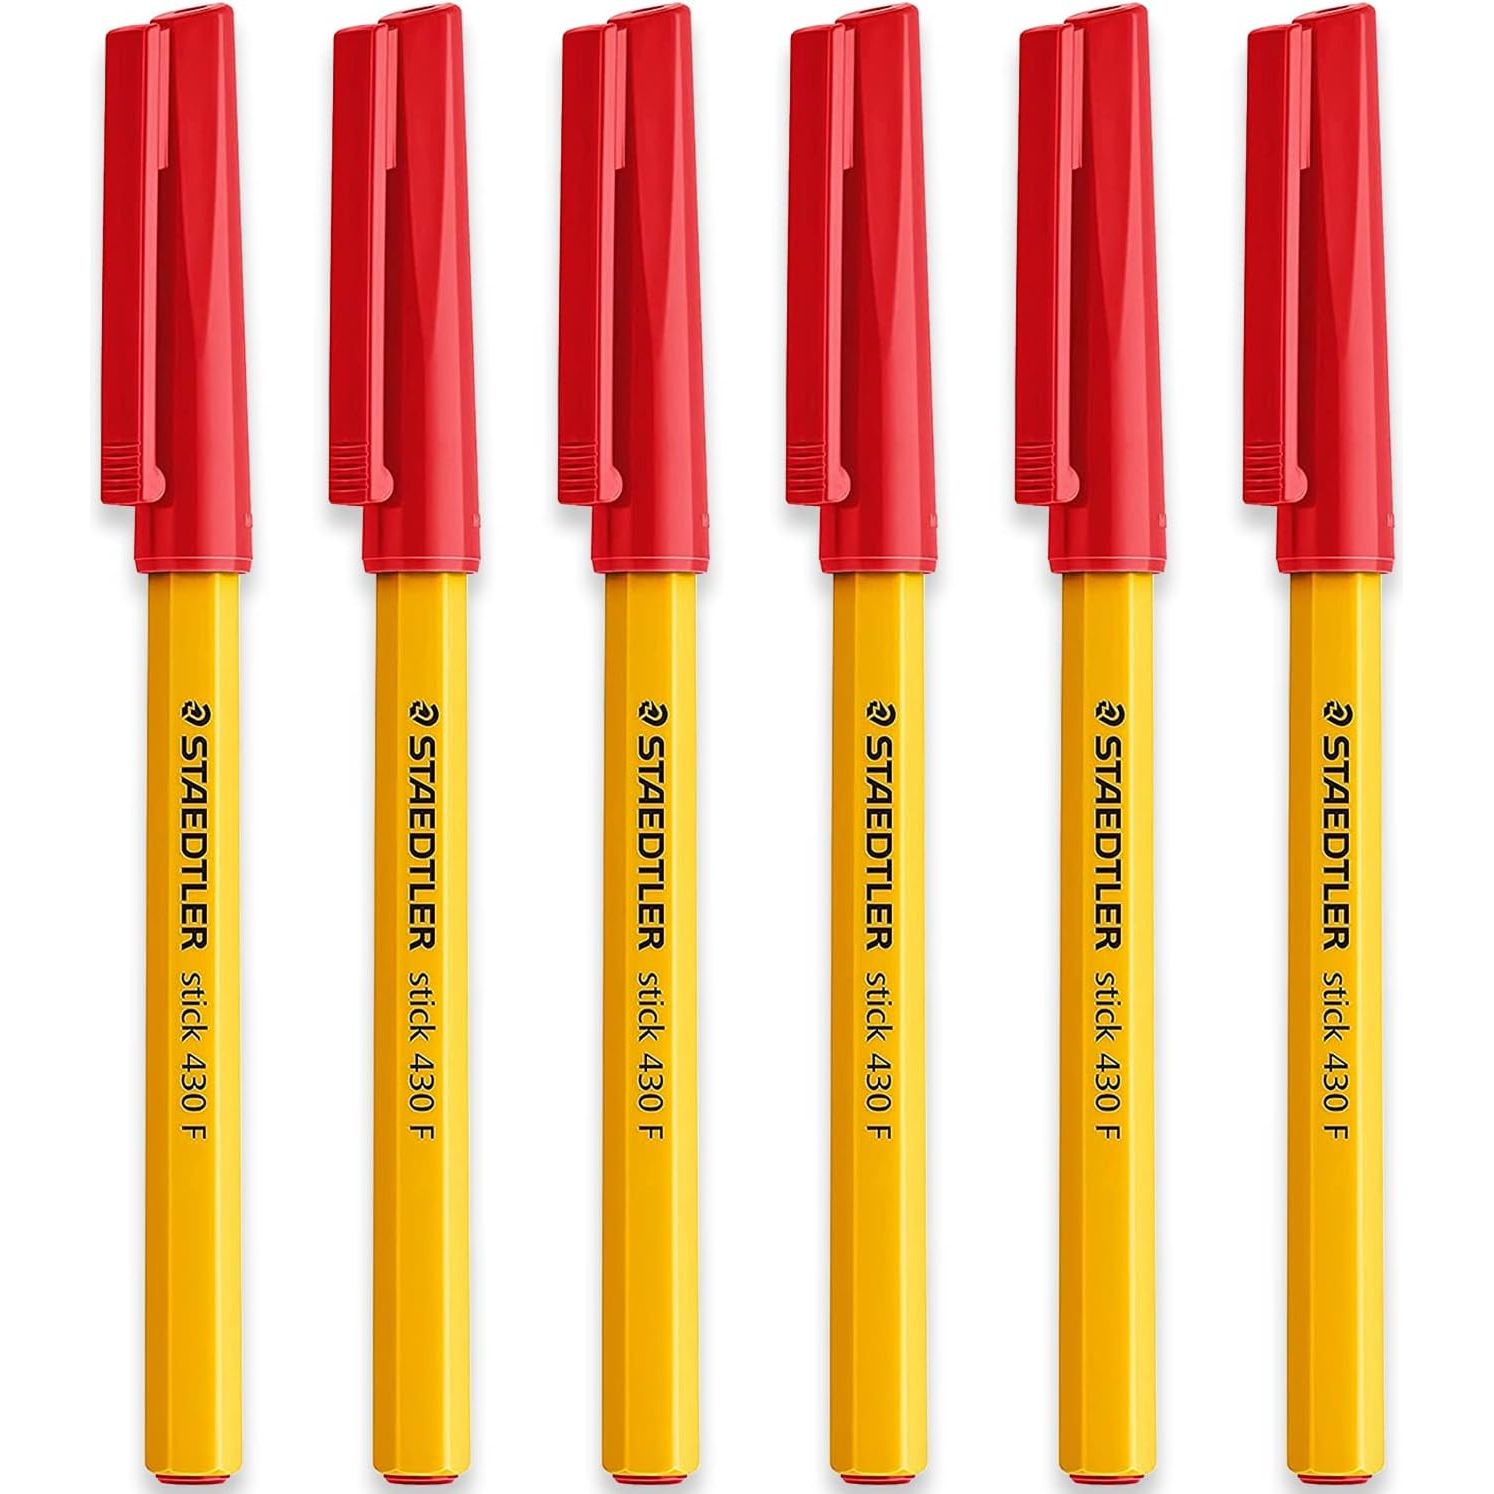 STAEDTLER Medium Stick 430 F-2 Ballpoint Pen Fine, Red